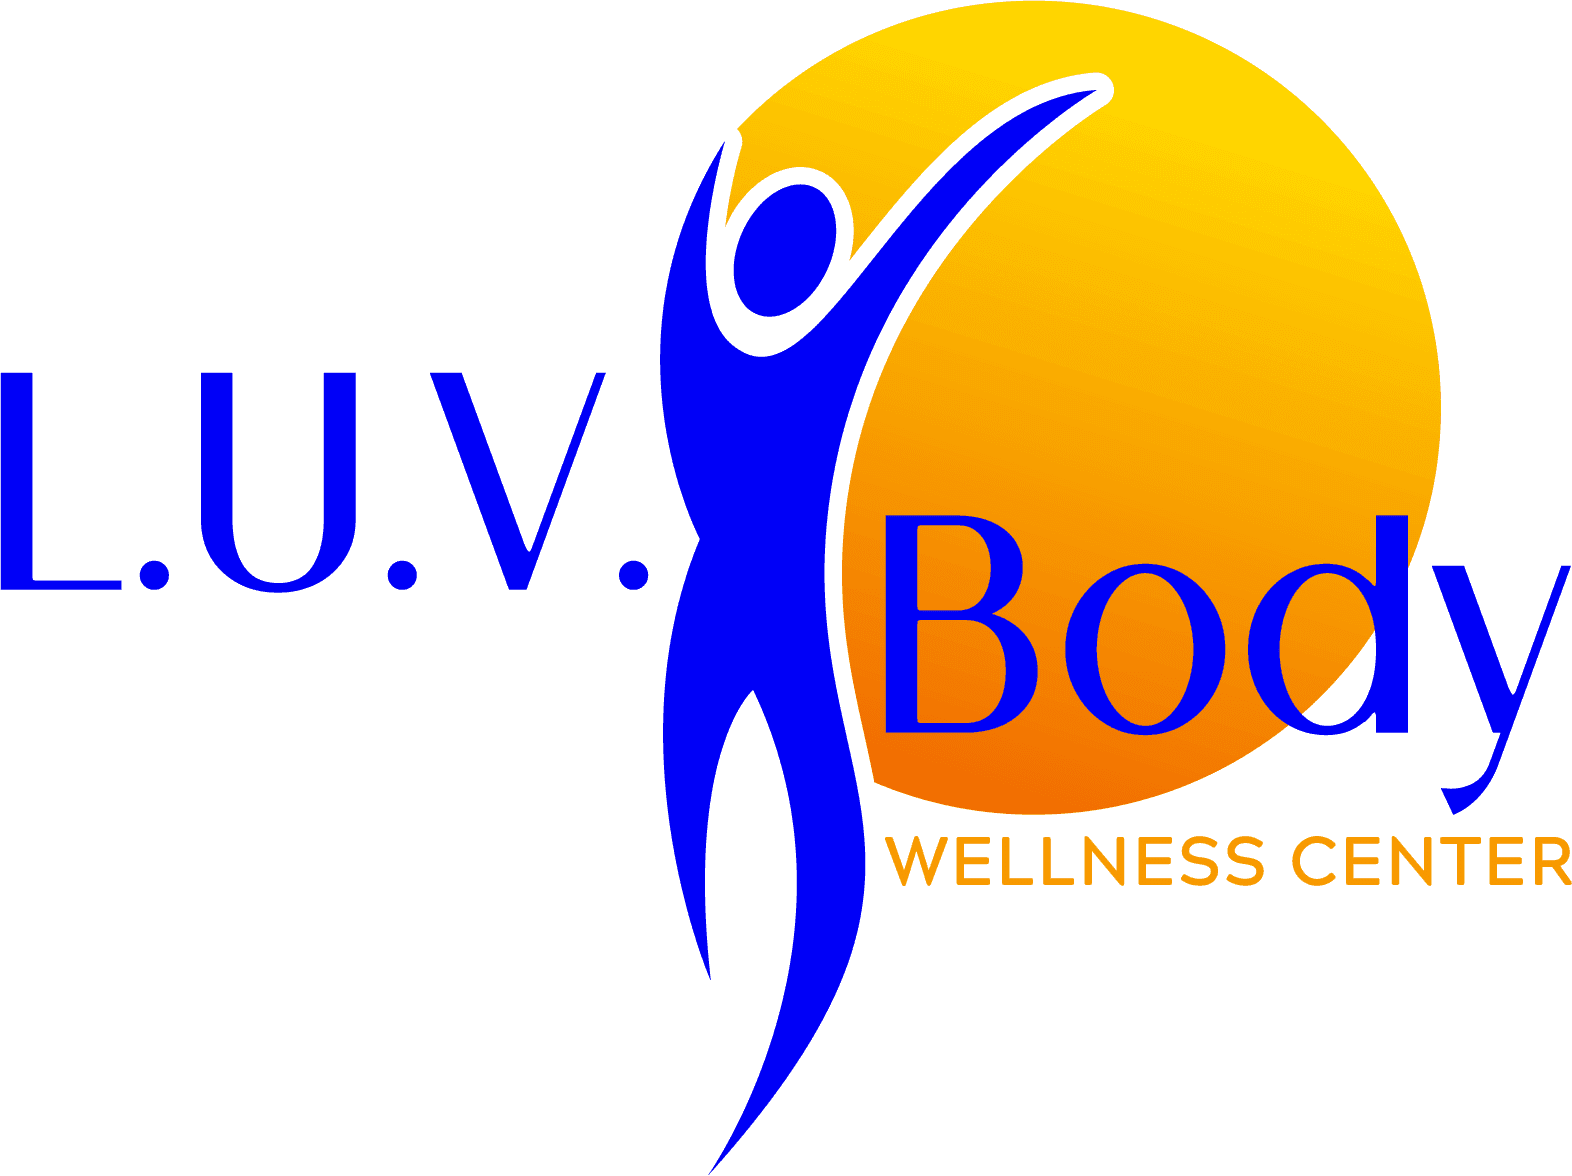 L.U.V. Body Wellness Center